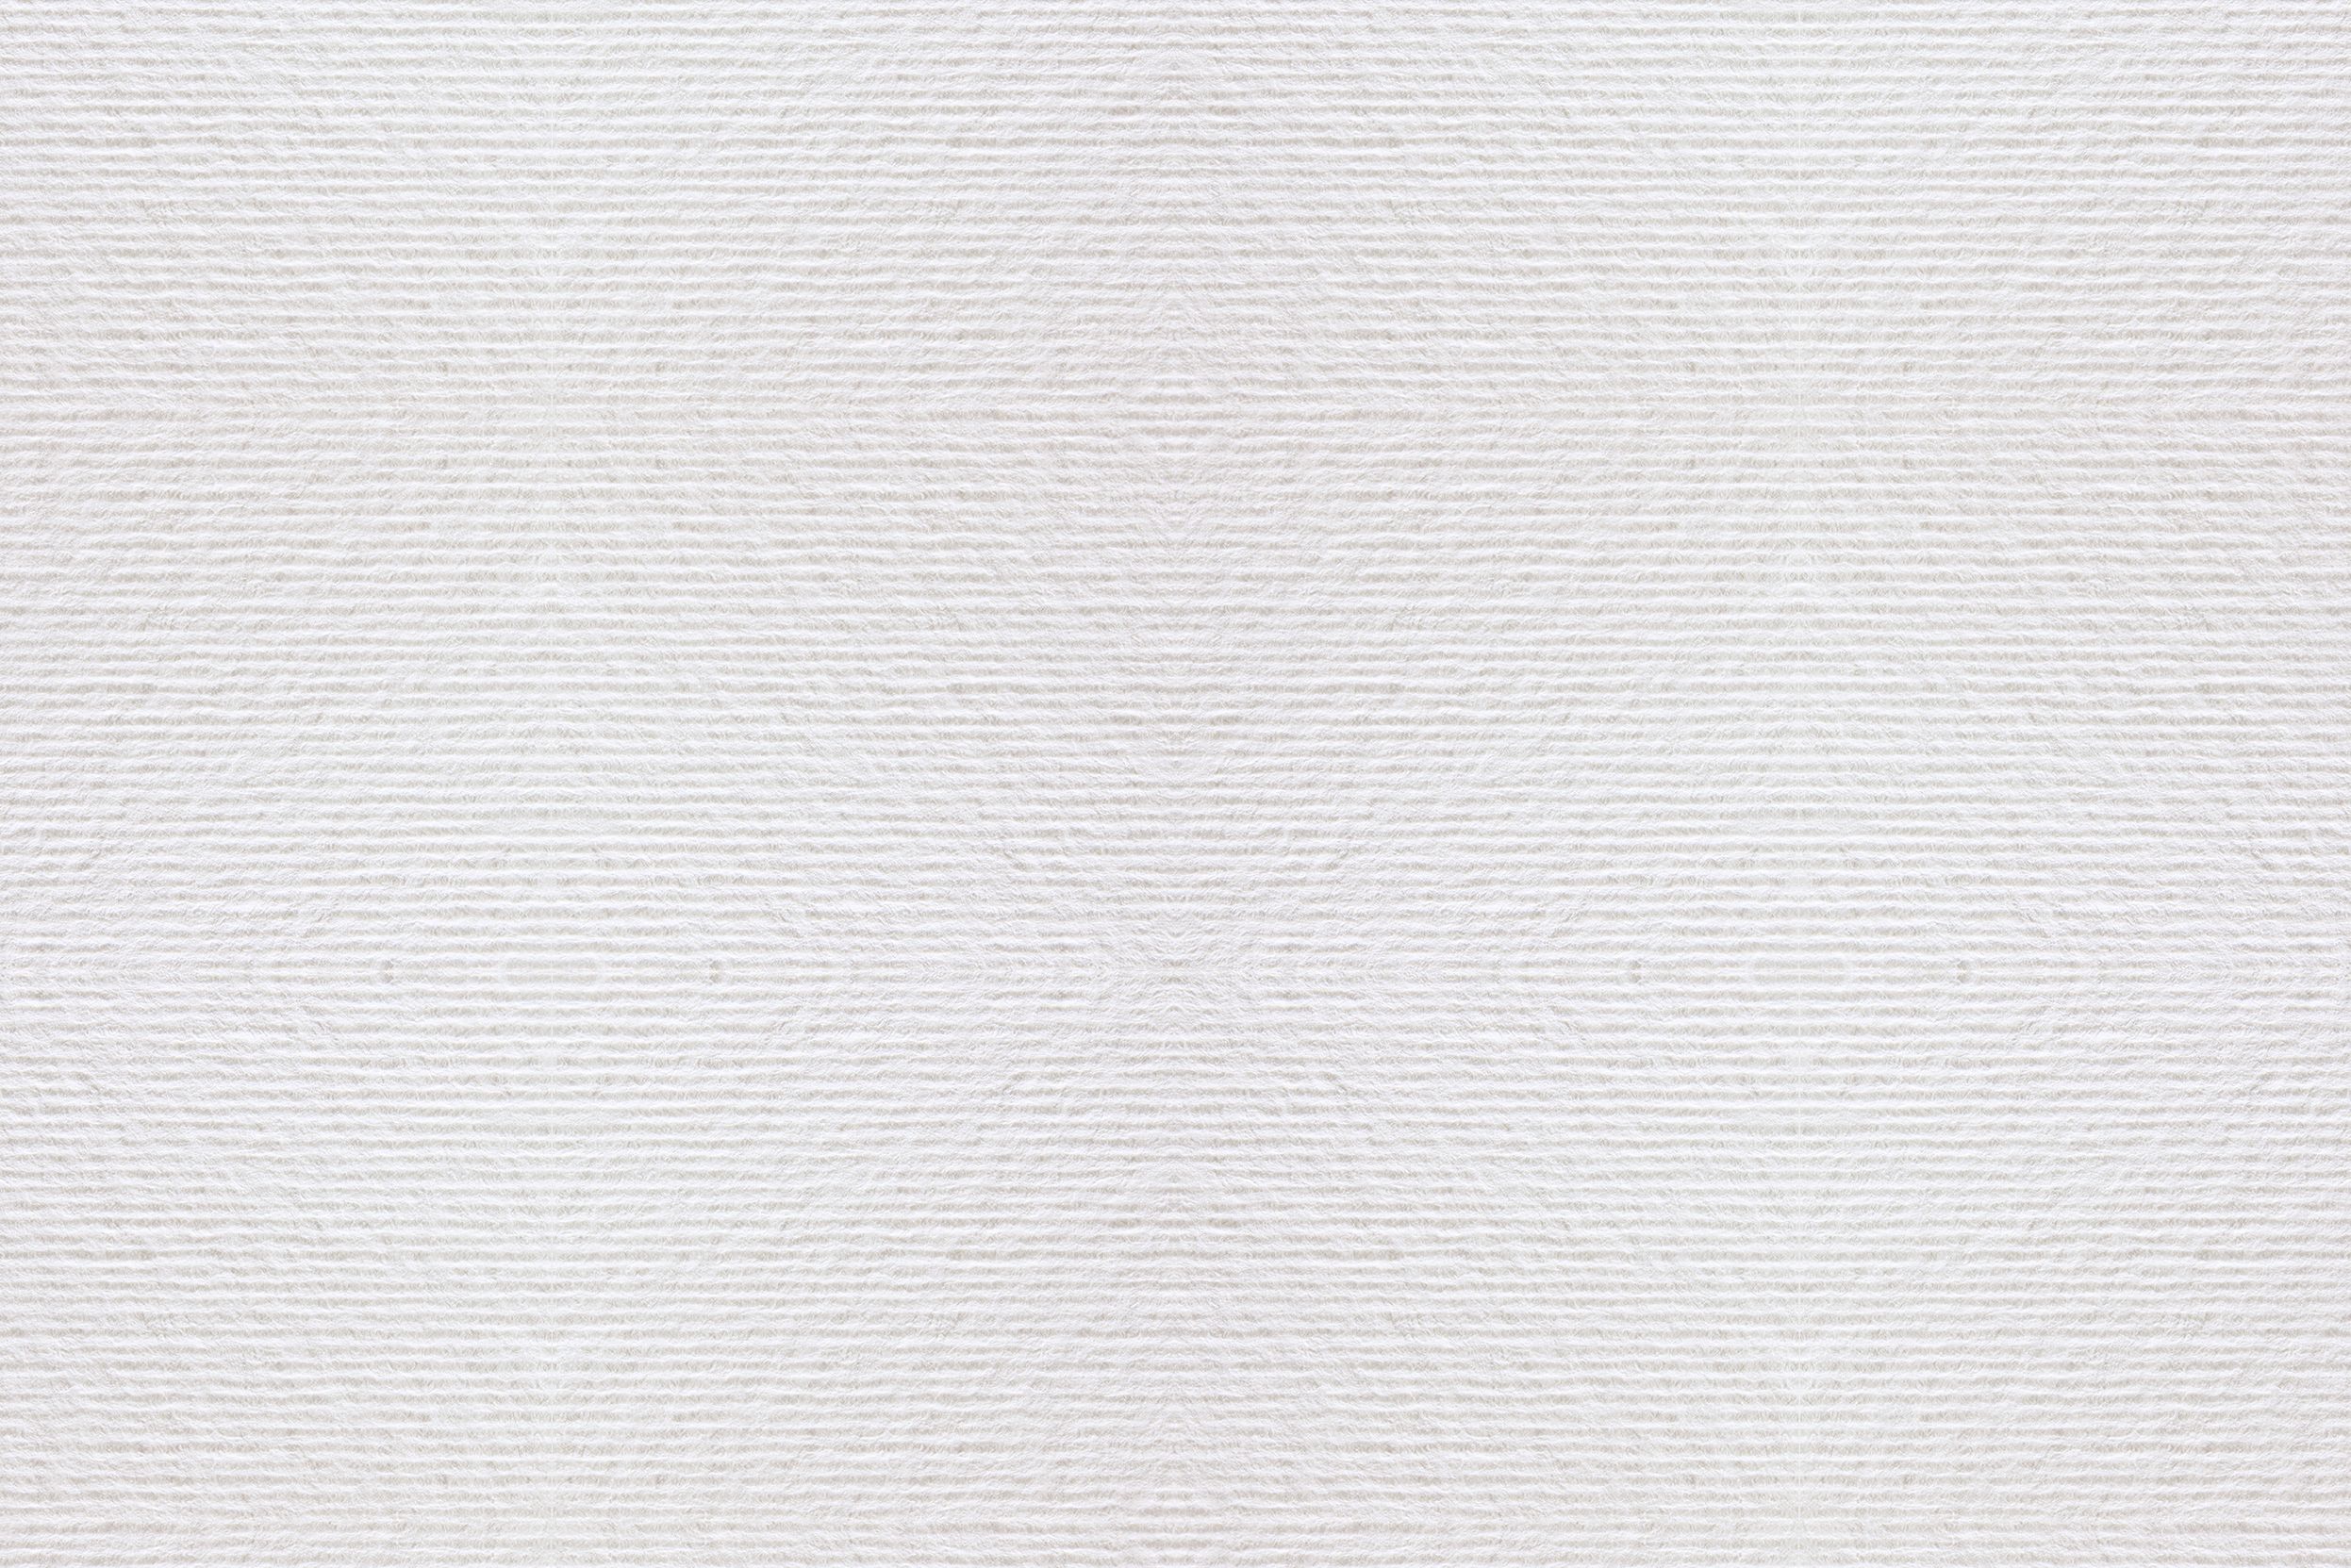 Acquerello Blanc (pas de bande de protection (strip), découpe carrée): Papier naturel de pure cellulose certifiée FSC. Surface: gaufrée avec lignes parallèles. Producteur: Fedrigoni